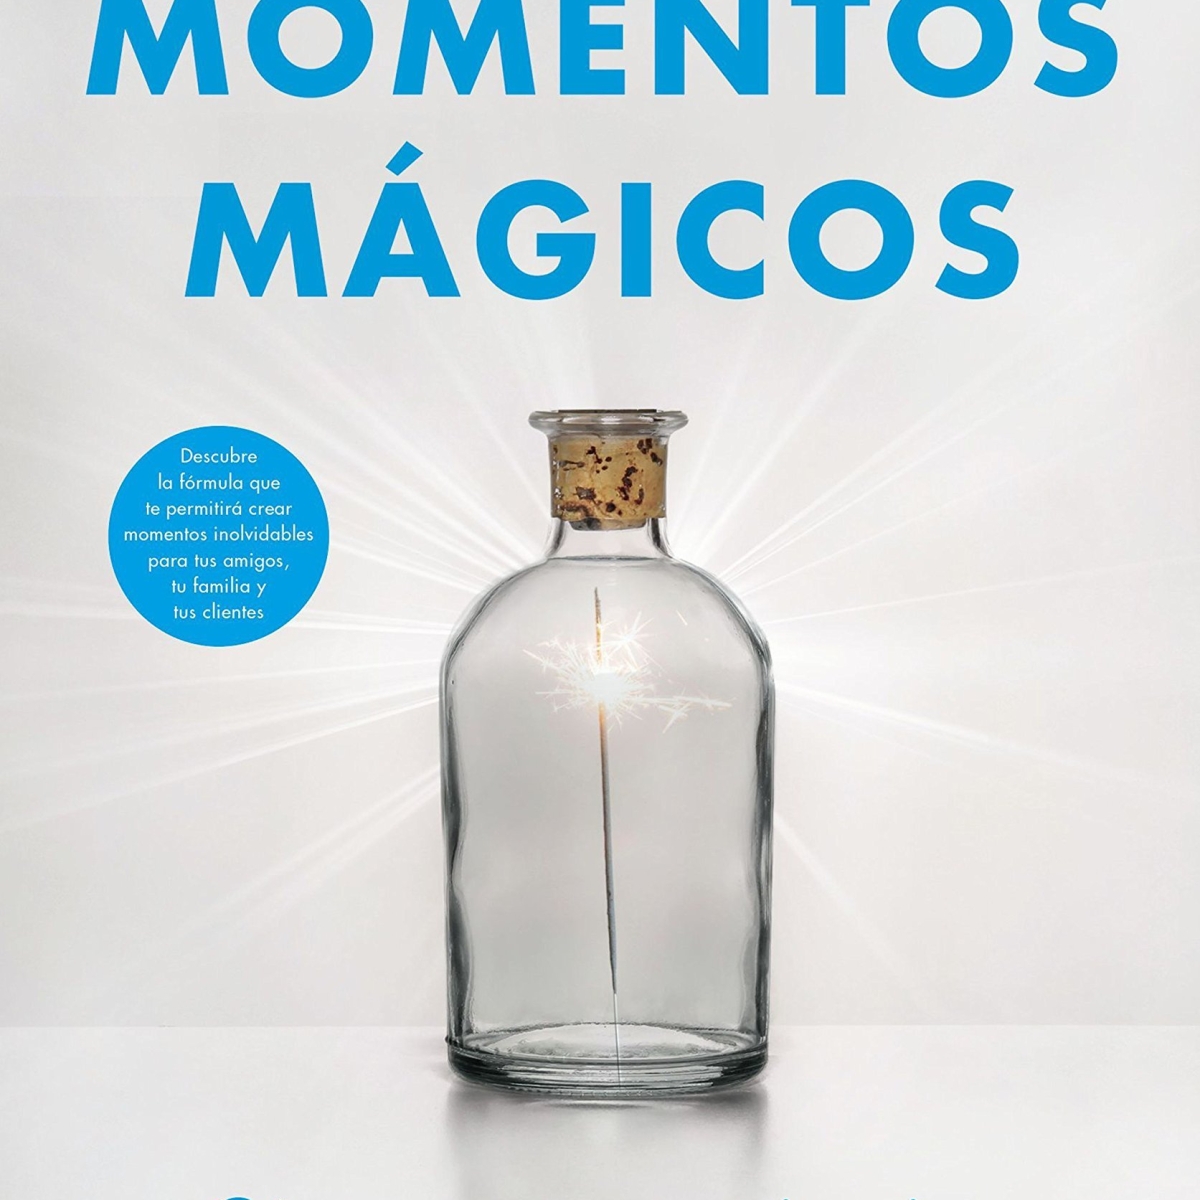 «Momentos mágicos» de Chip & Dan Heath